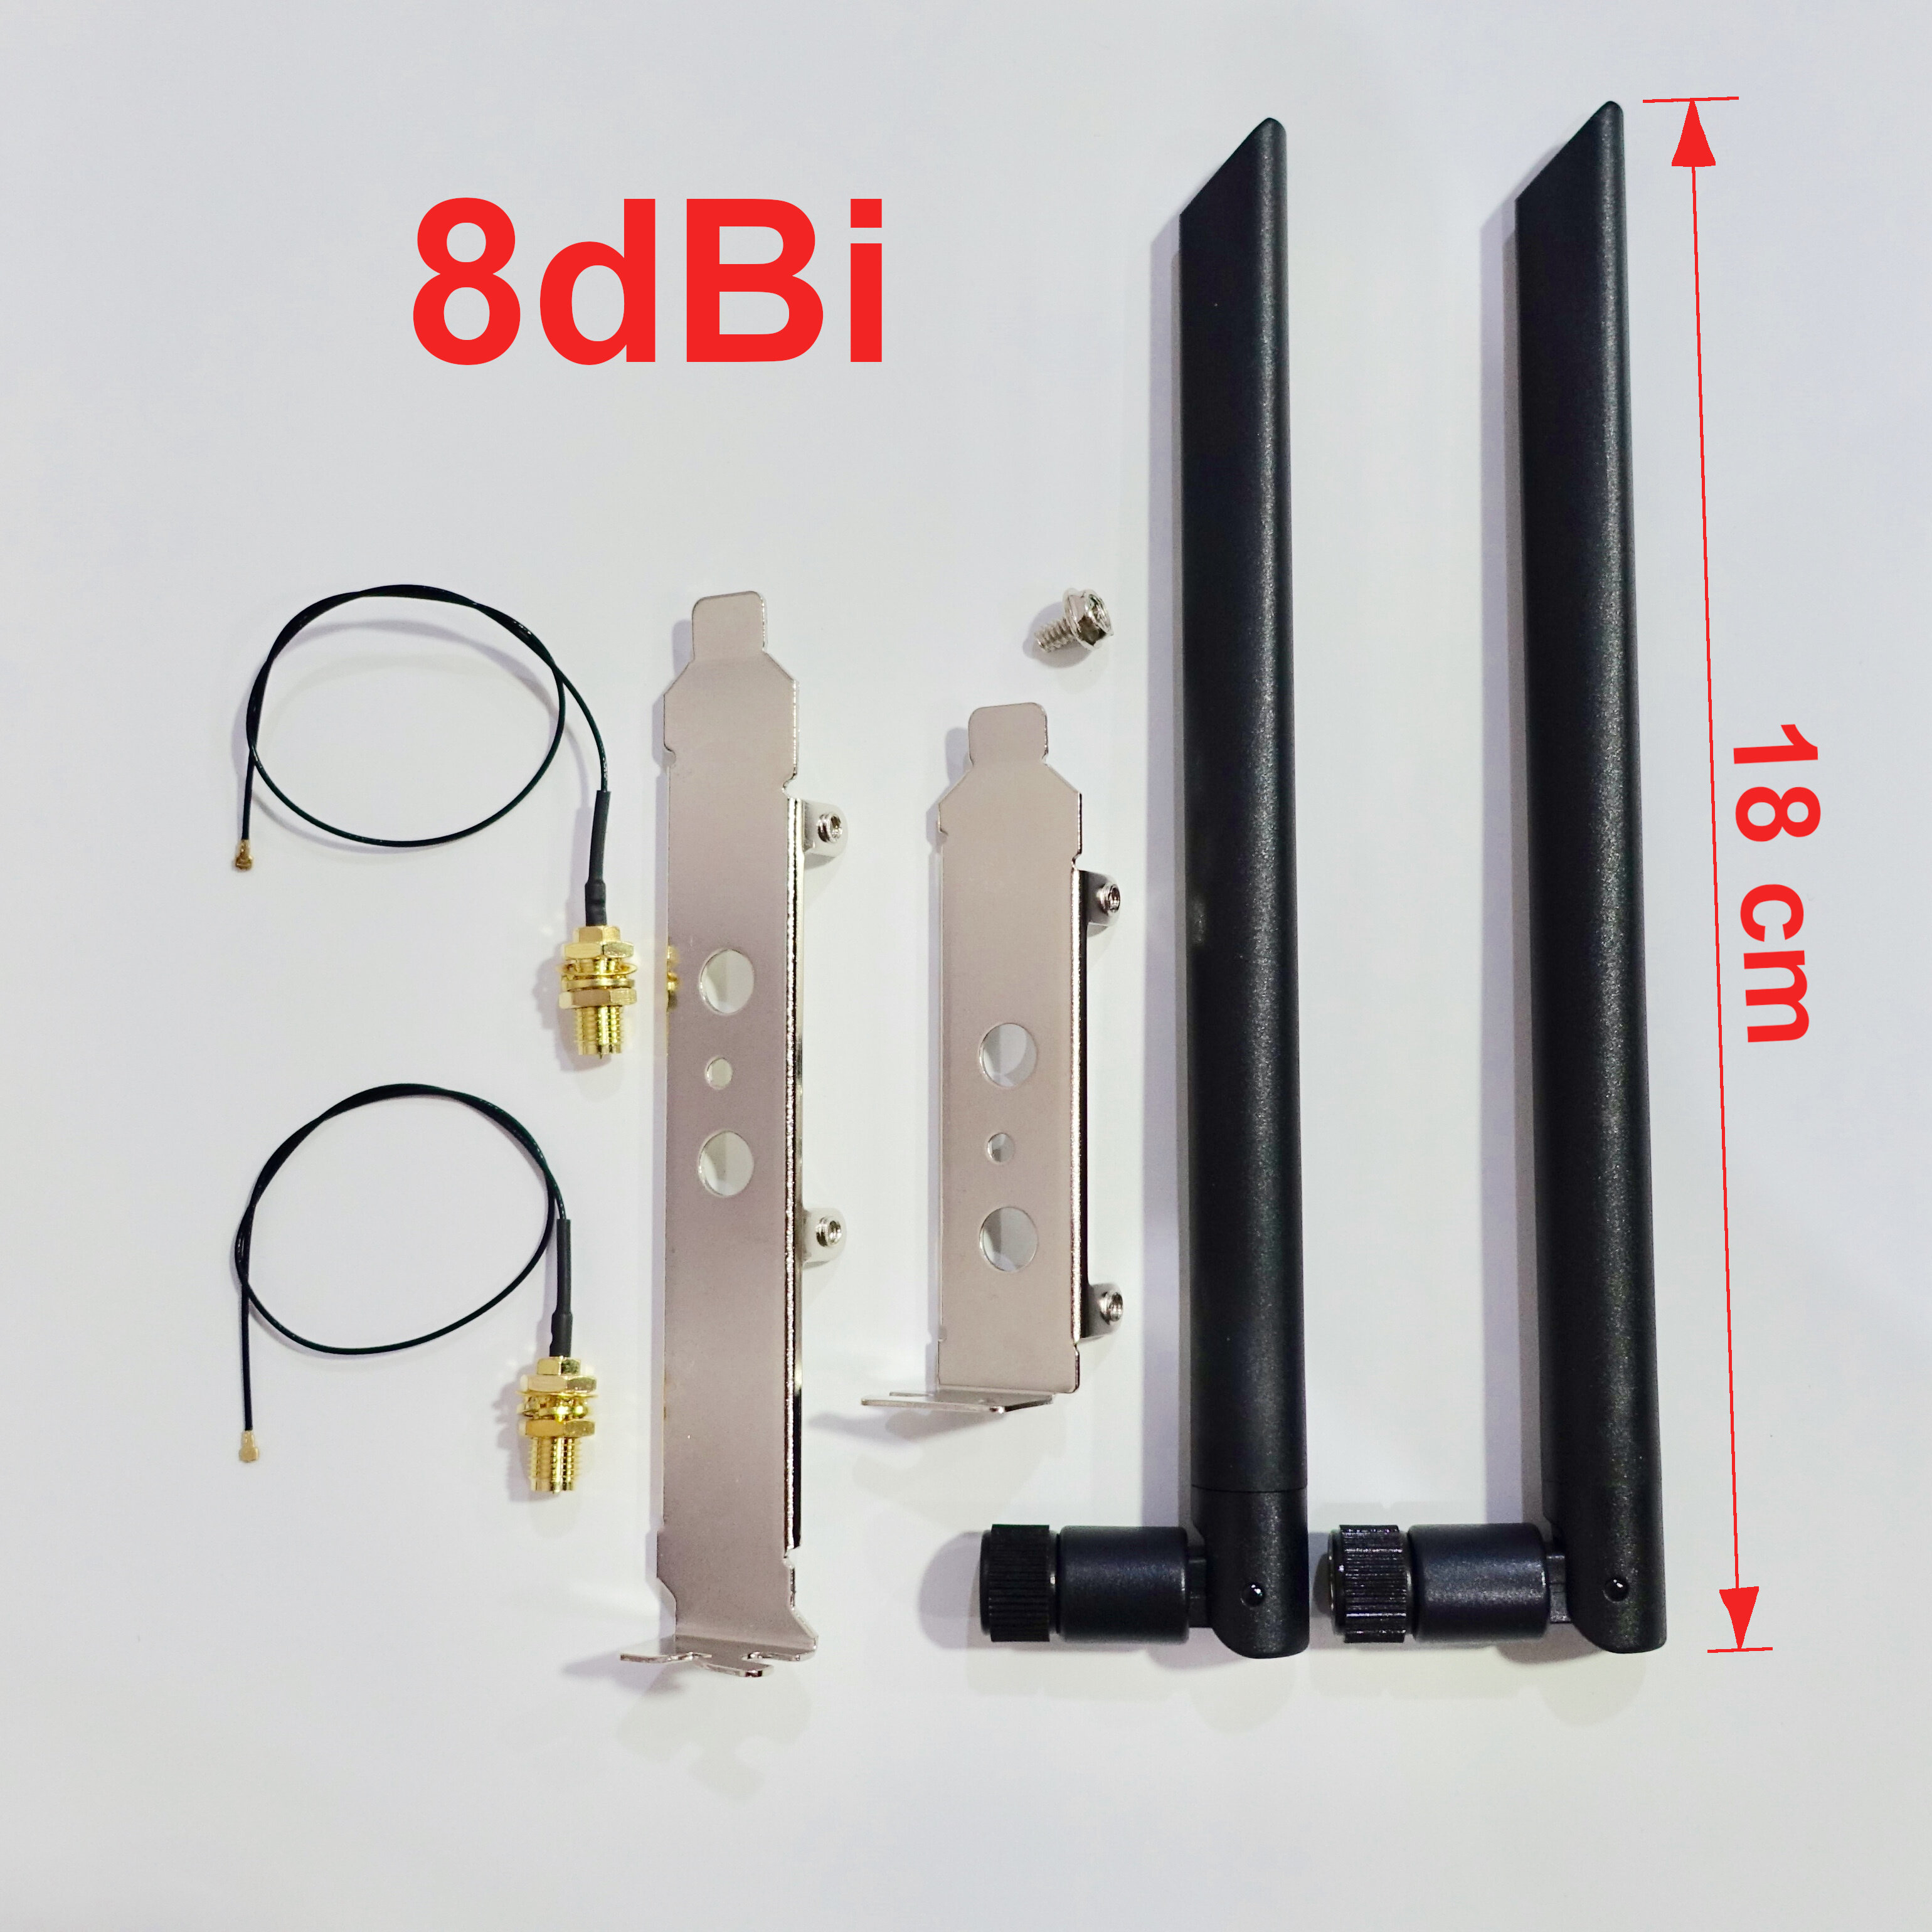 เสาไวไฟ 6 dBi 8 dBi Dual-Band WiFi Antenna รองรับ WiFI 6 พร้อมอุปกรณ์ (ใช้กับการ์ด WiFi AX200)